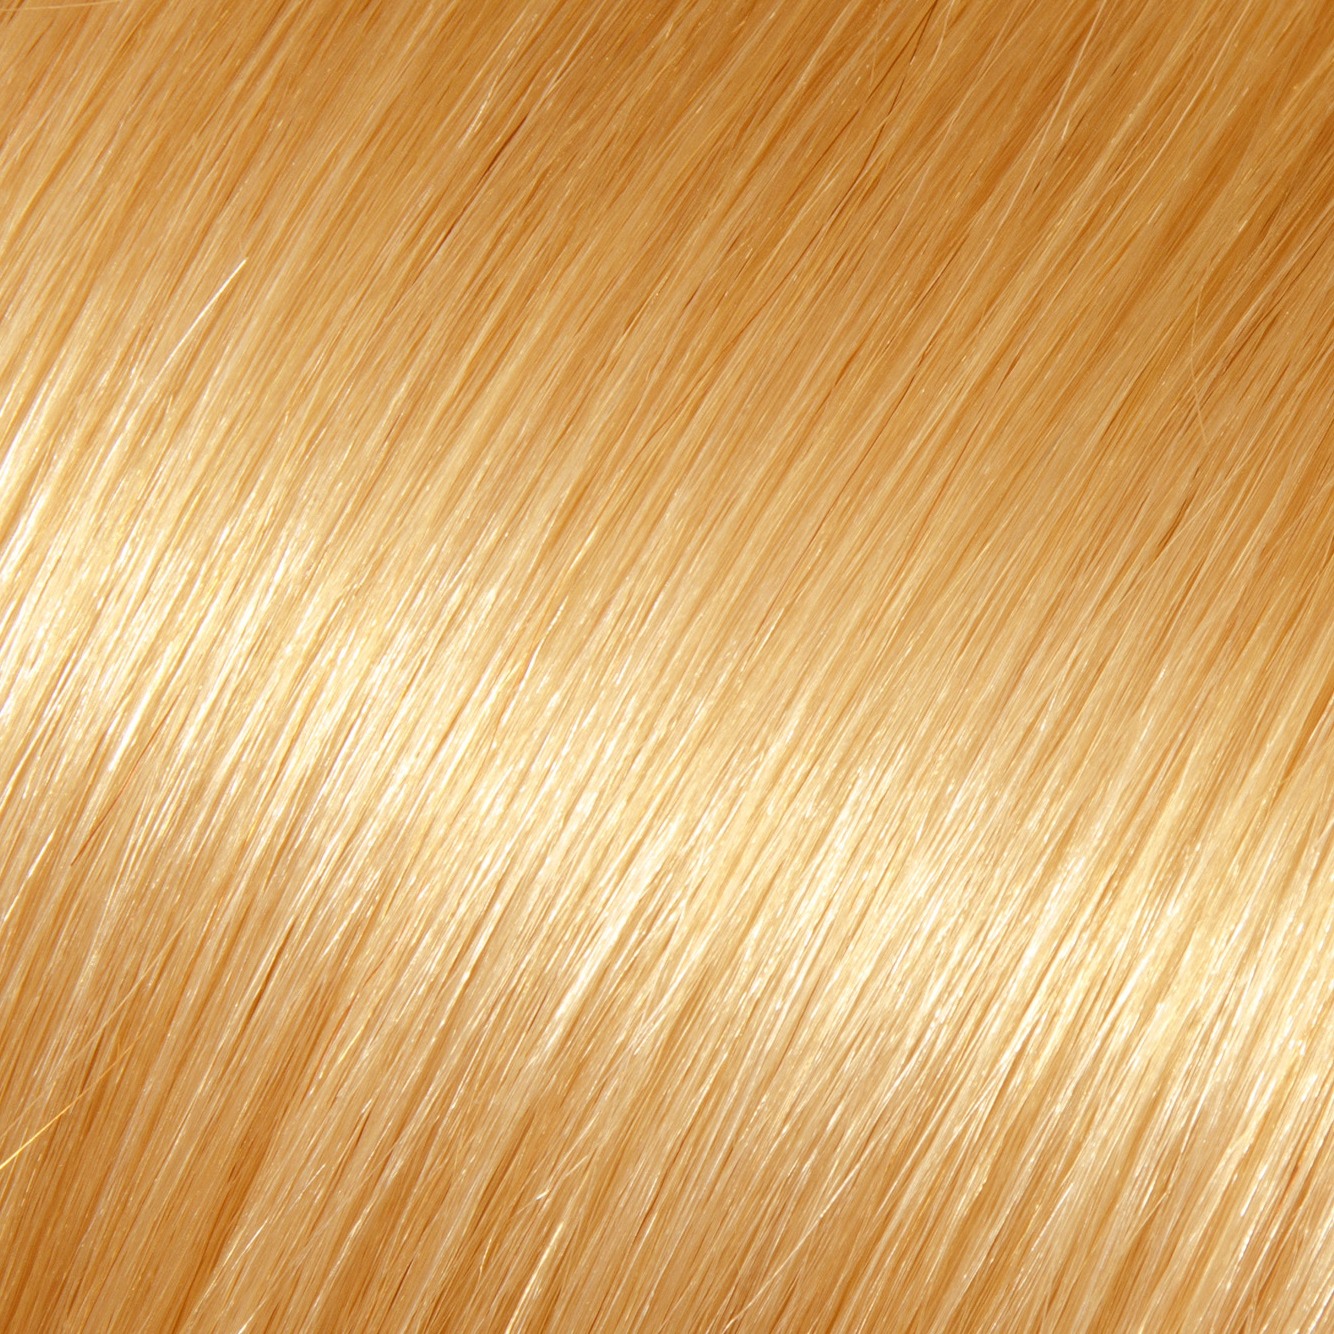 Herbal Hair Color-5b.jpg